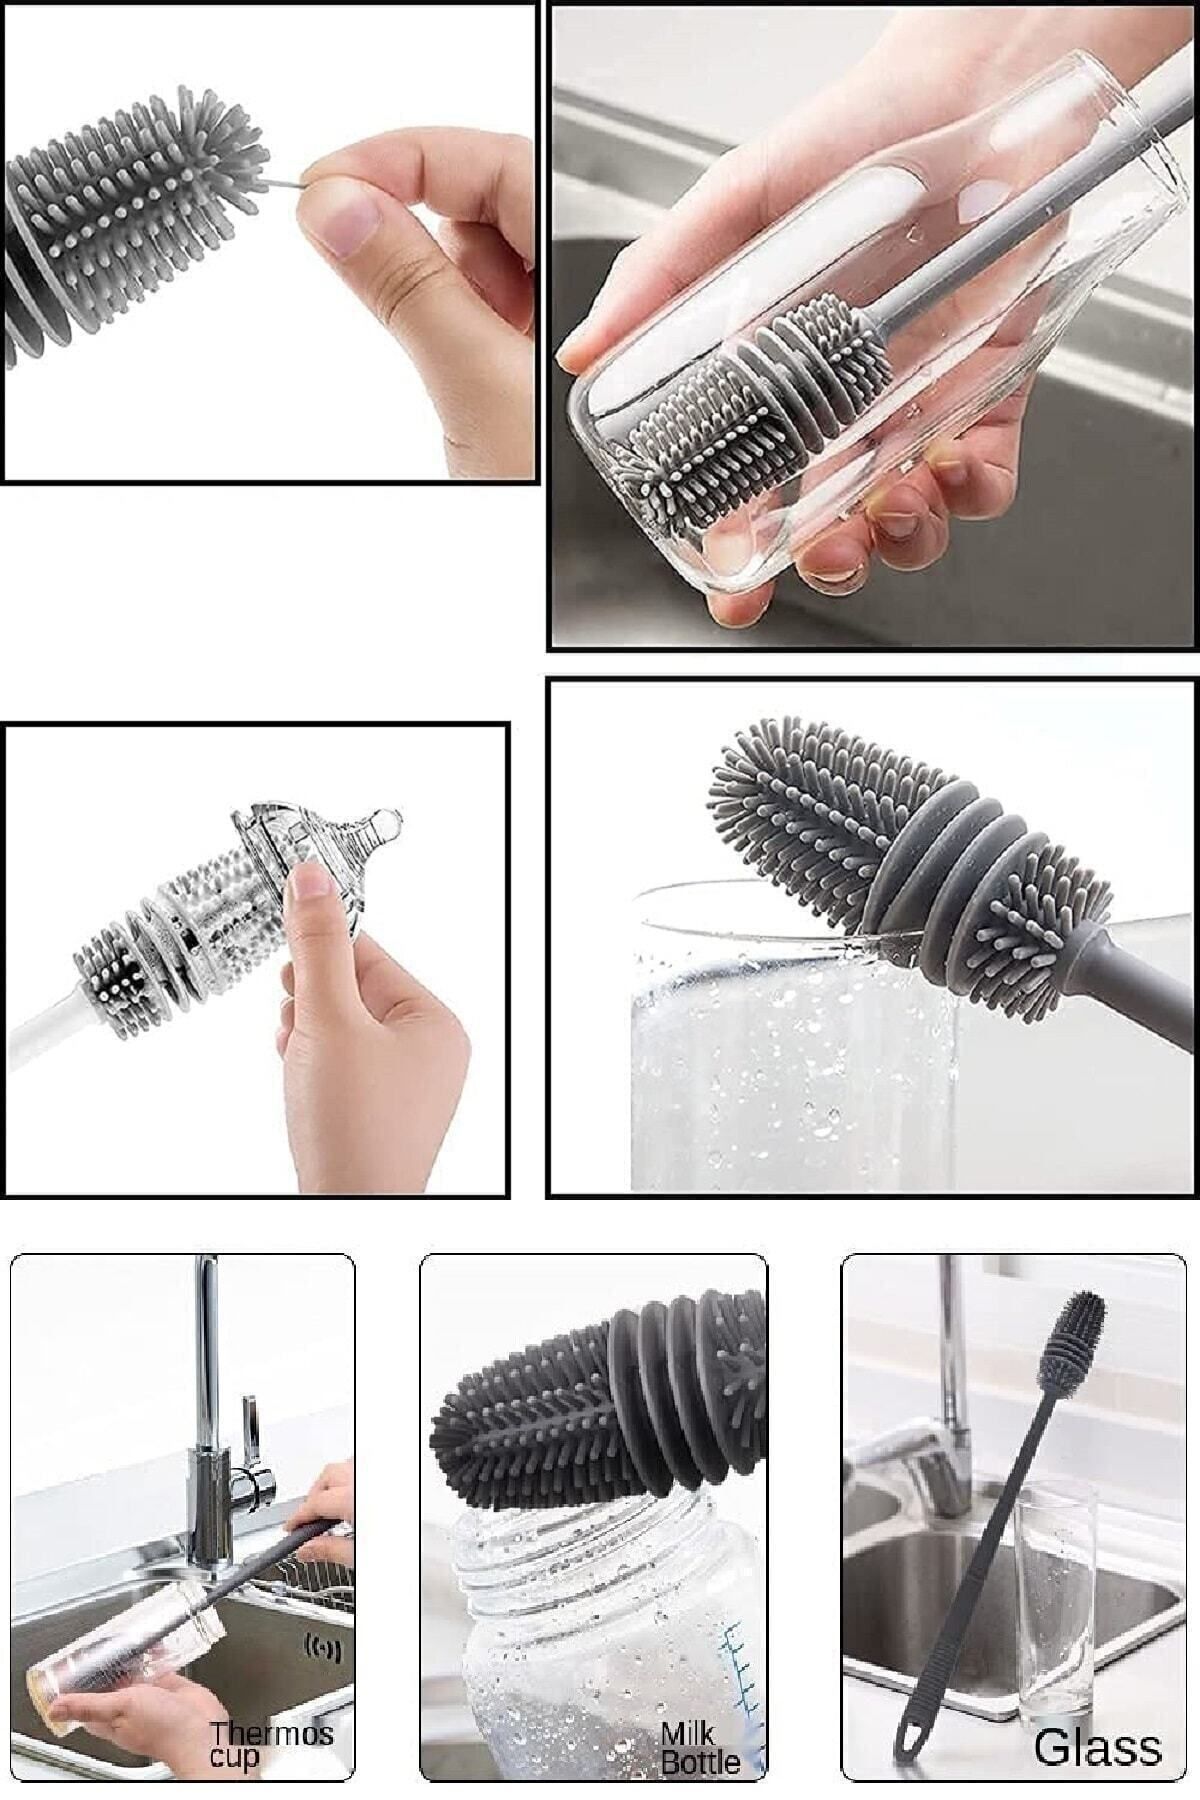 Comprox Tpr Silikon Fırça Matara Biberon Emzik Temizleyici Kavanoz Termos Suluk Yağ Şişe Temizleme Fırçası